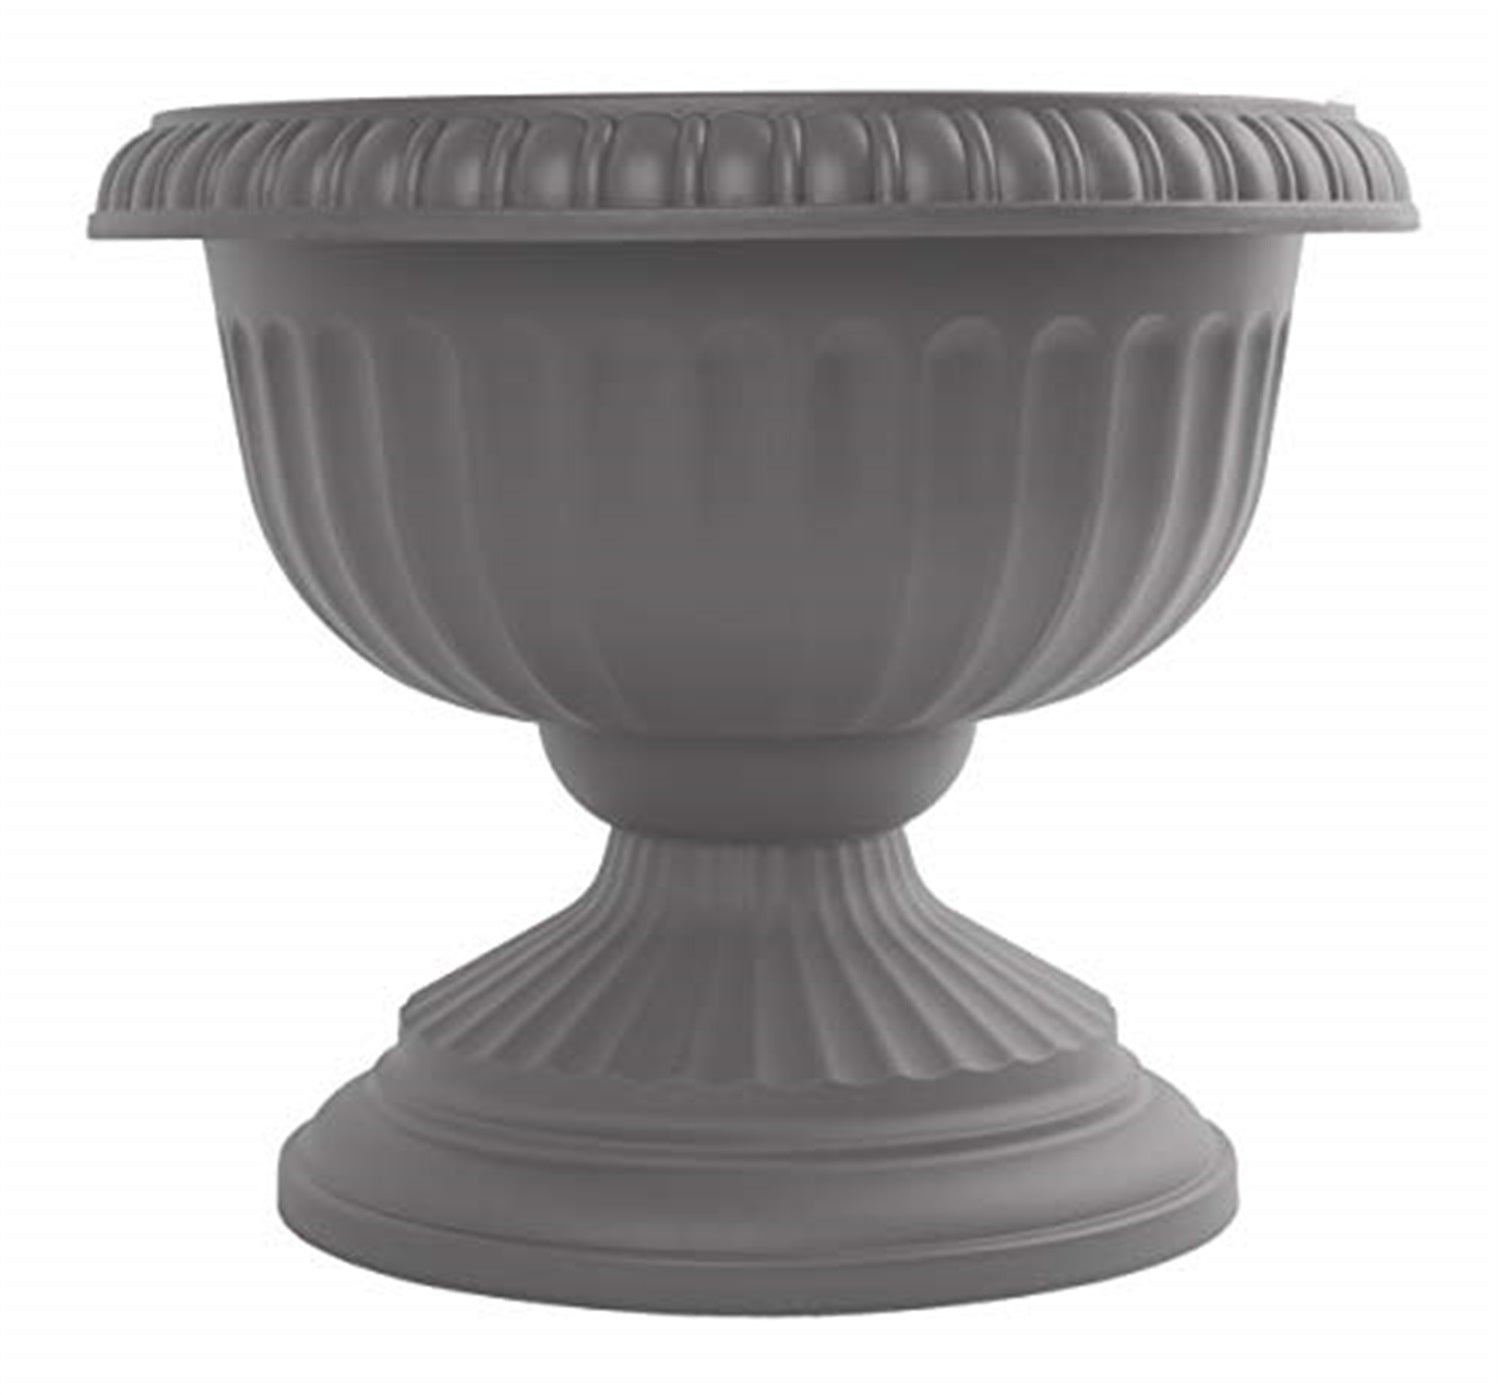 Bloem Indoor/Outdoor Plastic Grecian Urn Planter, Charcoal, 12"